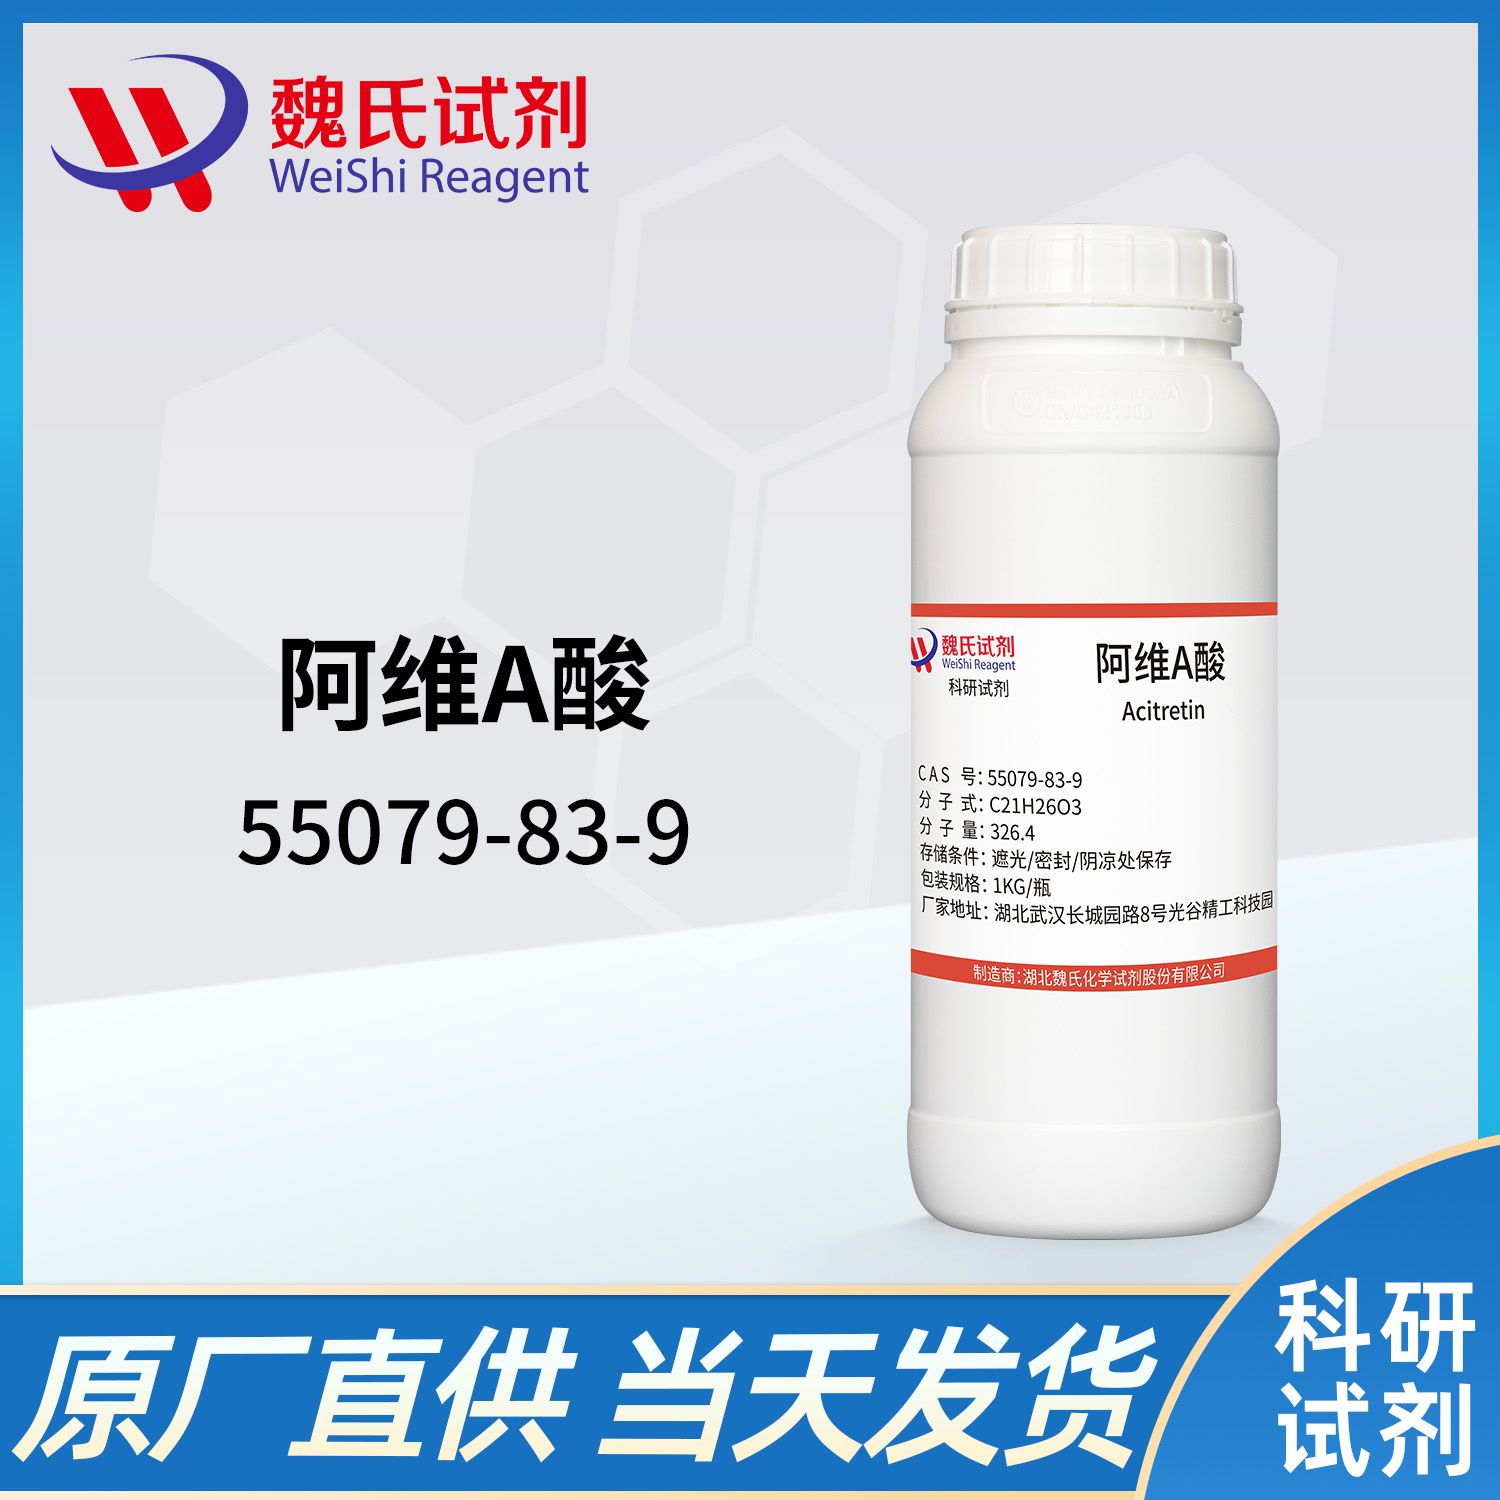 55079-83-9/阿维A酸；阿曲汀/Etretin